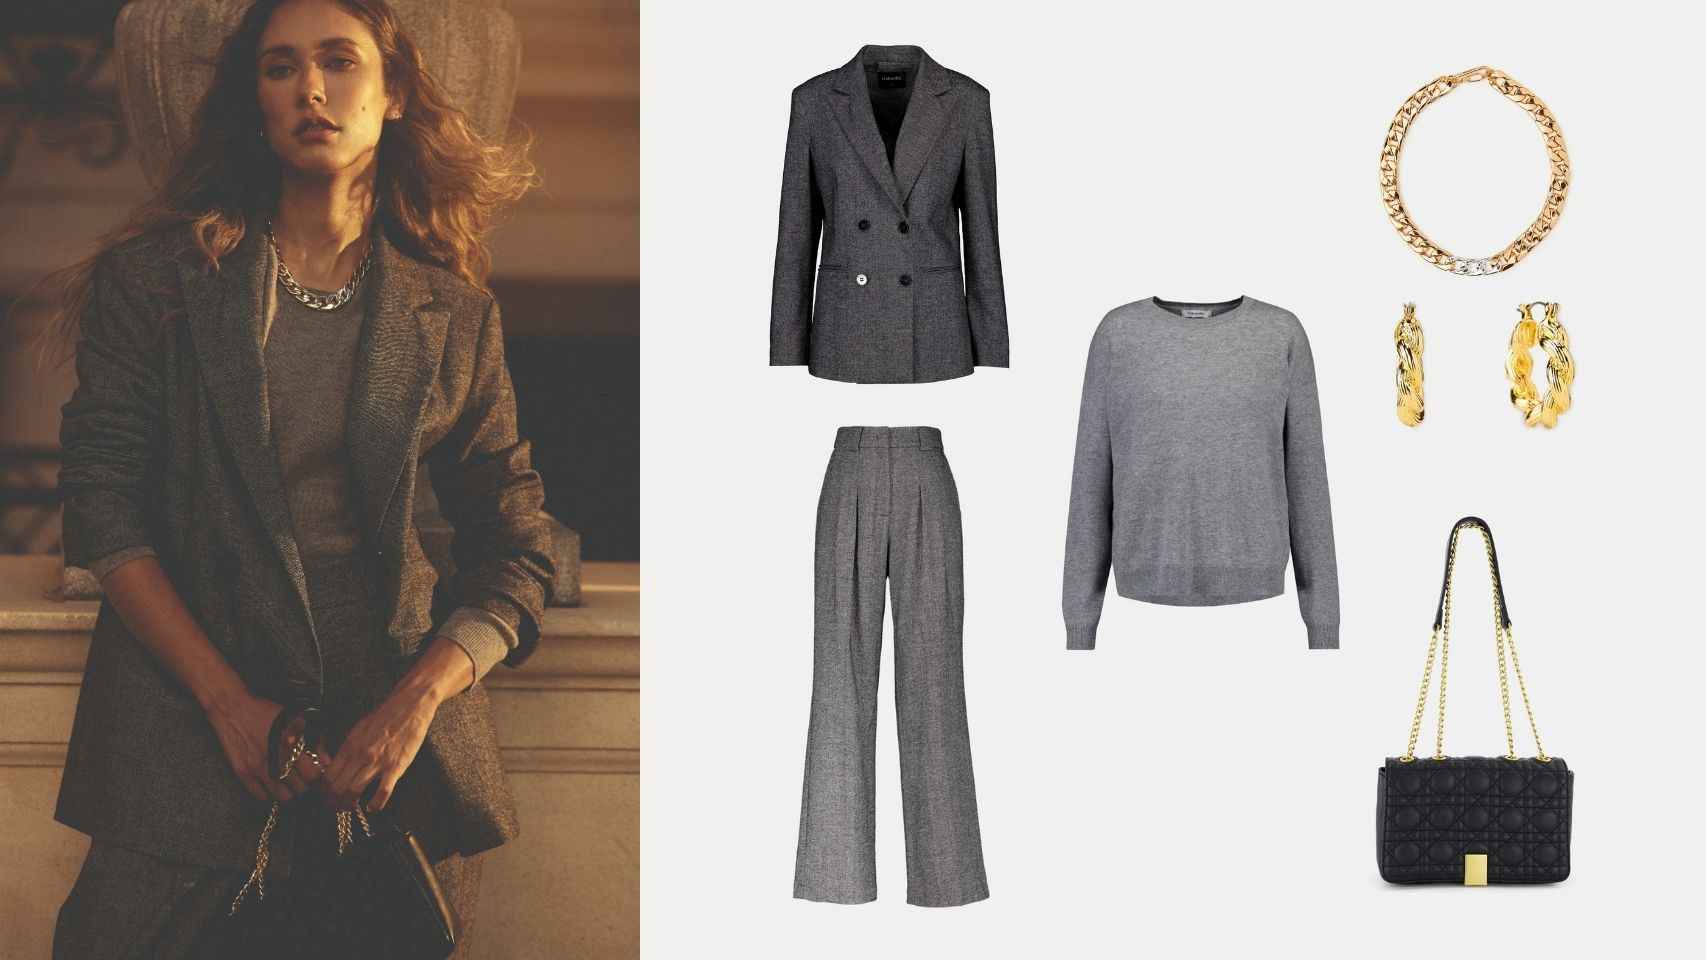 Combinación de chaqueta (120€) y pantalón de vestir (79,99€), jersey cuello redondo (79,99€), bolso acolchado (49,99€) y colgante (25,99€) de Tintoretto.